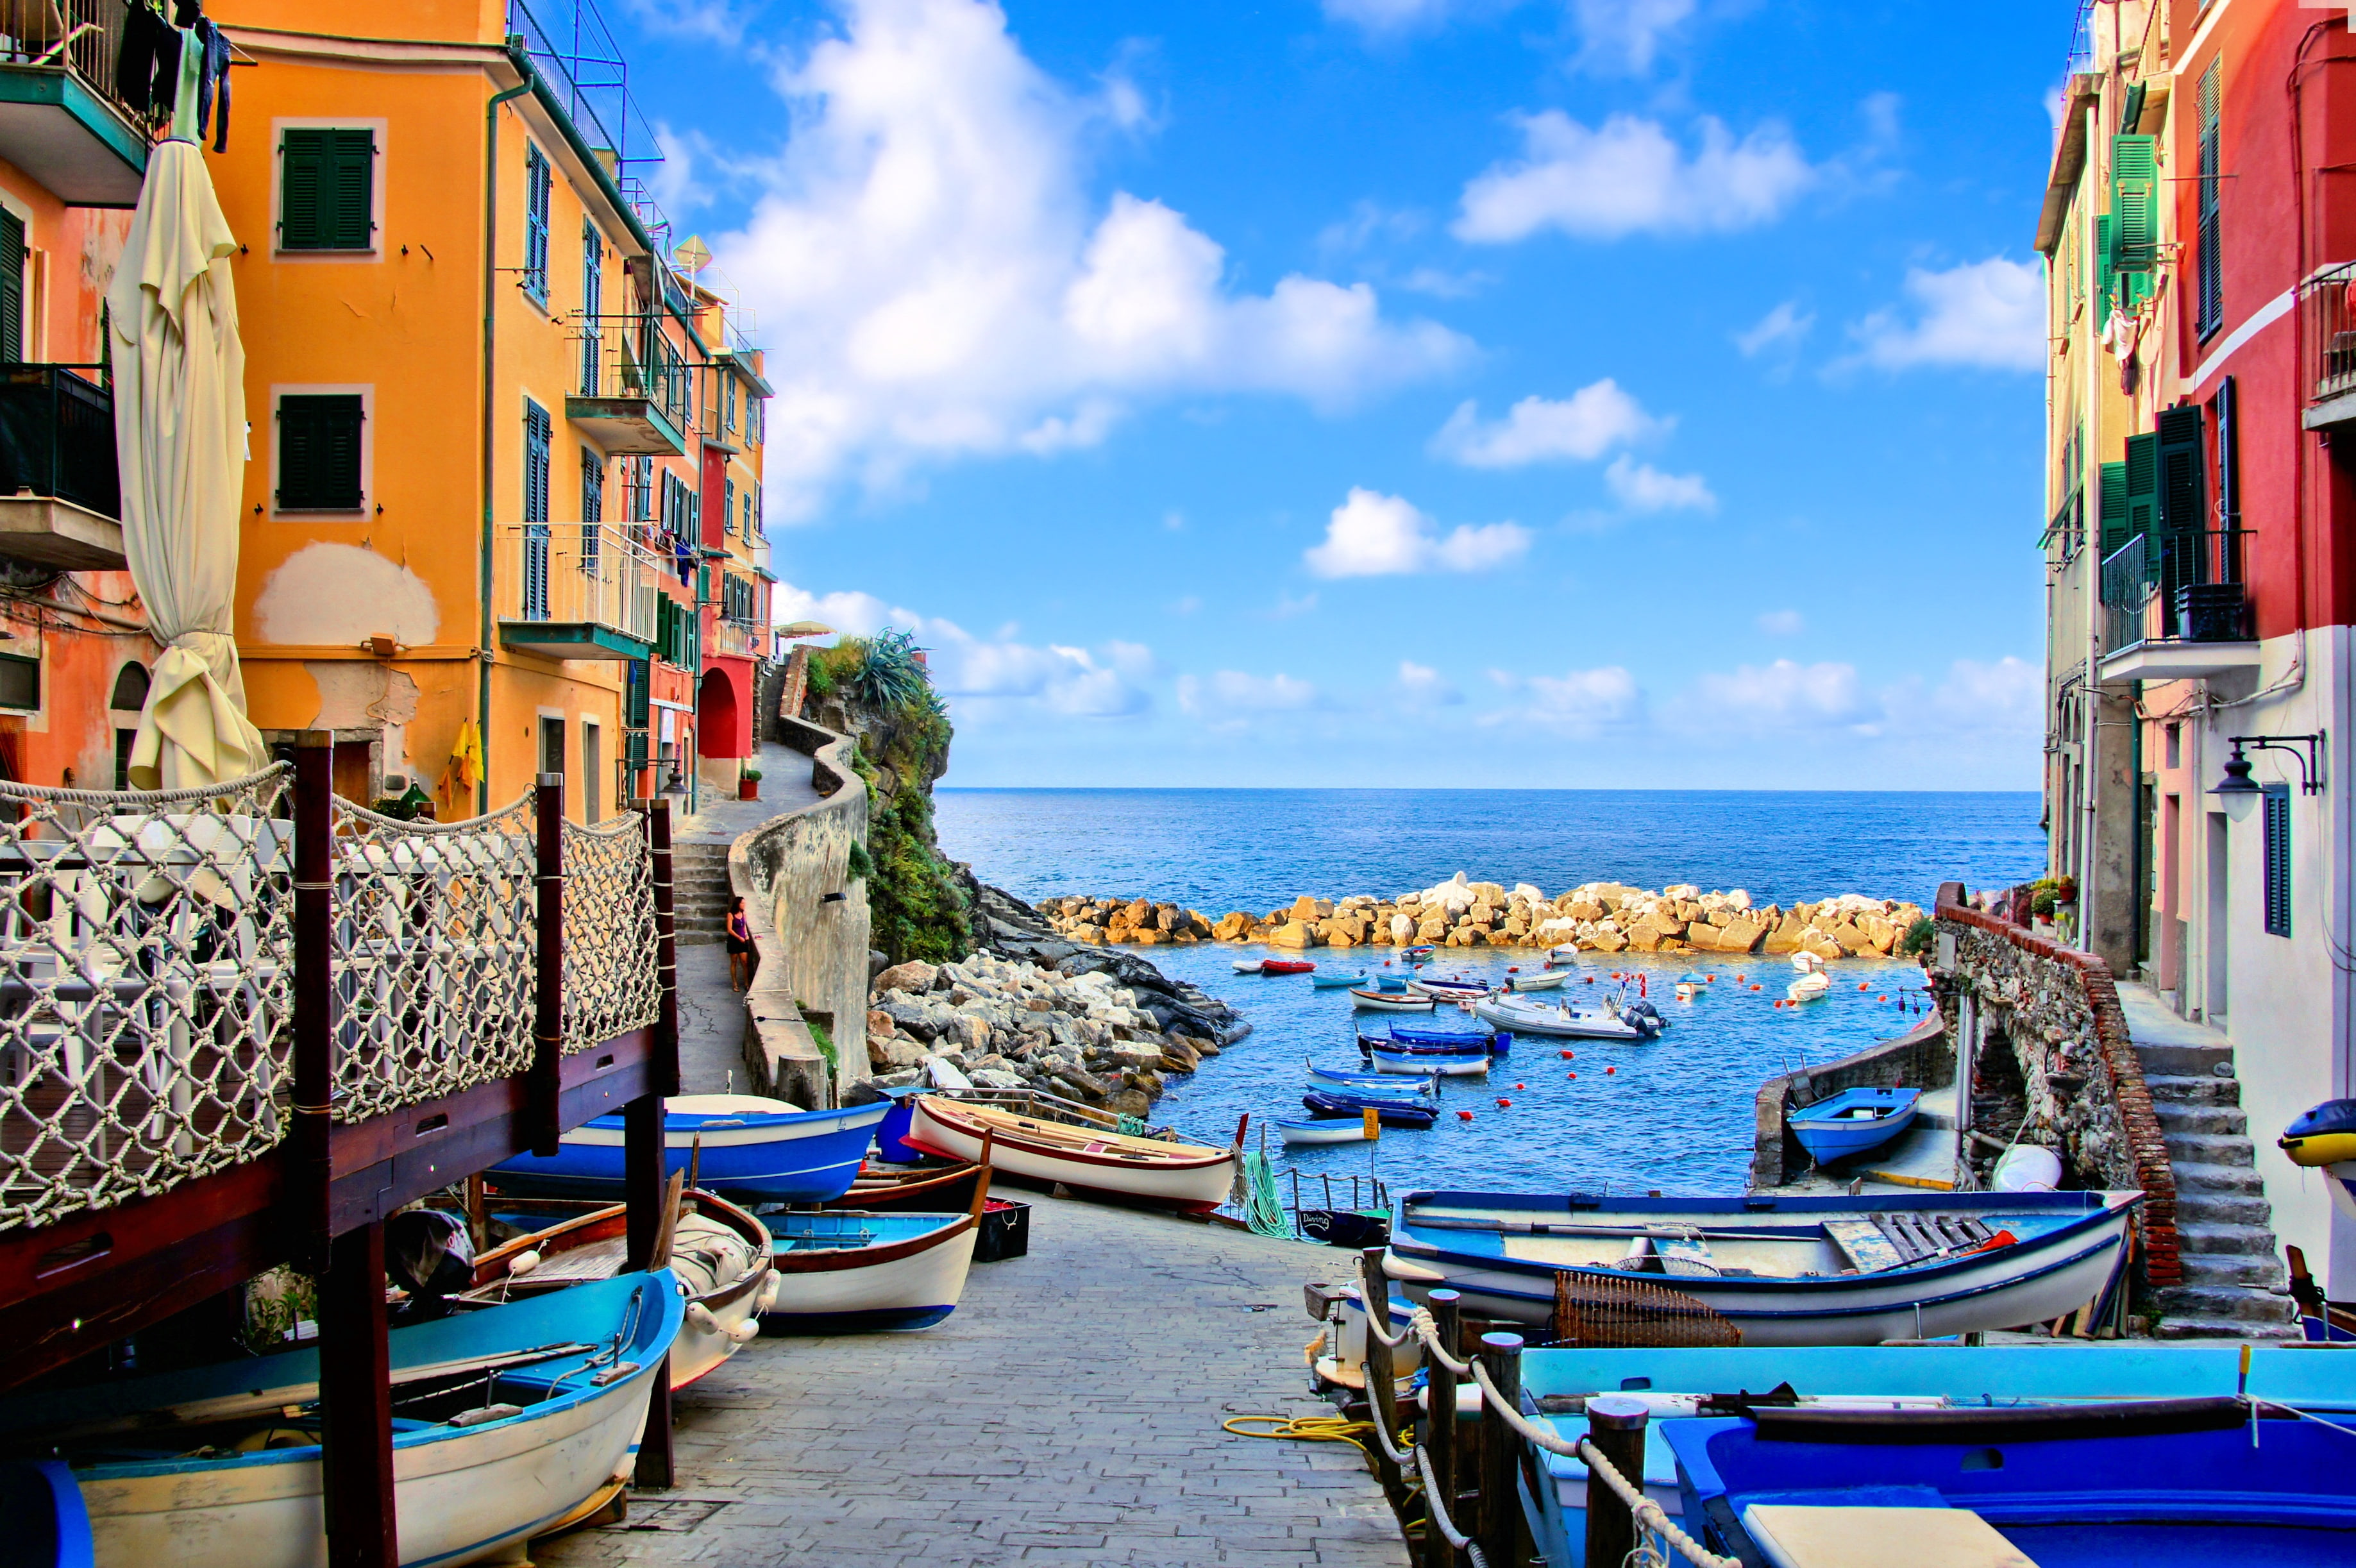 sea, coast, Villa, boats, Italy, houses, Riomaggiore, travel